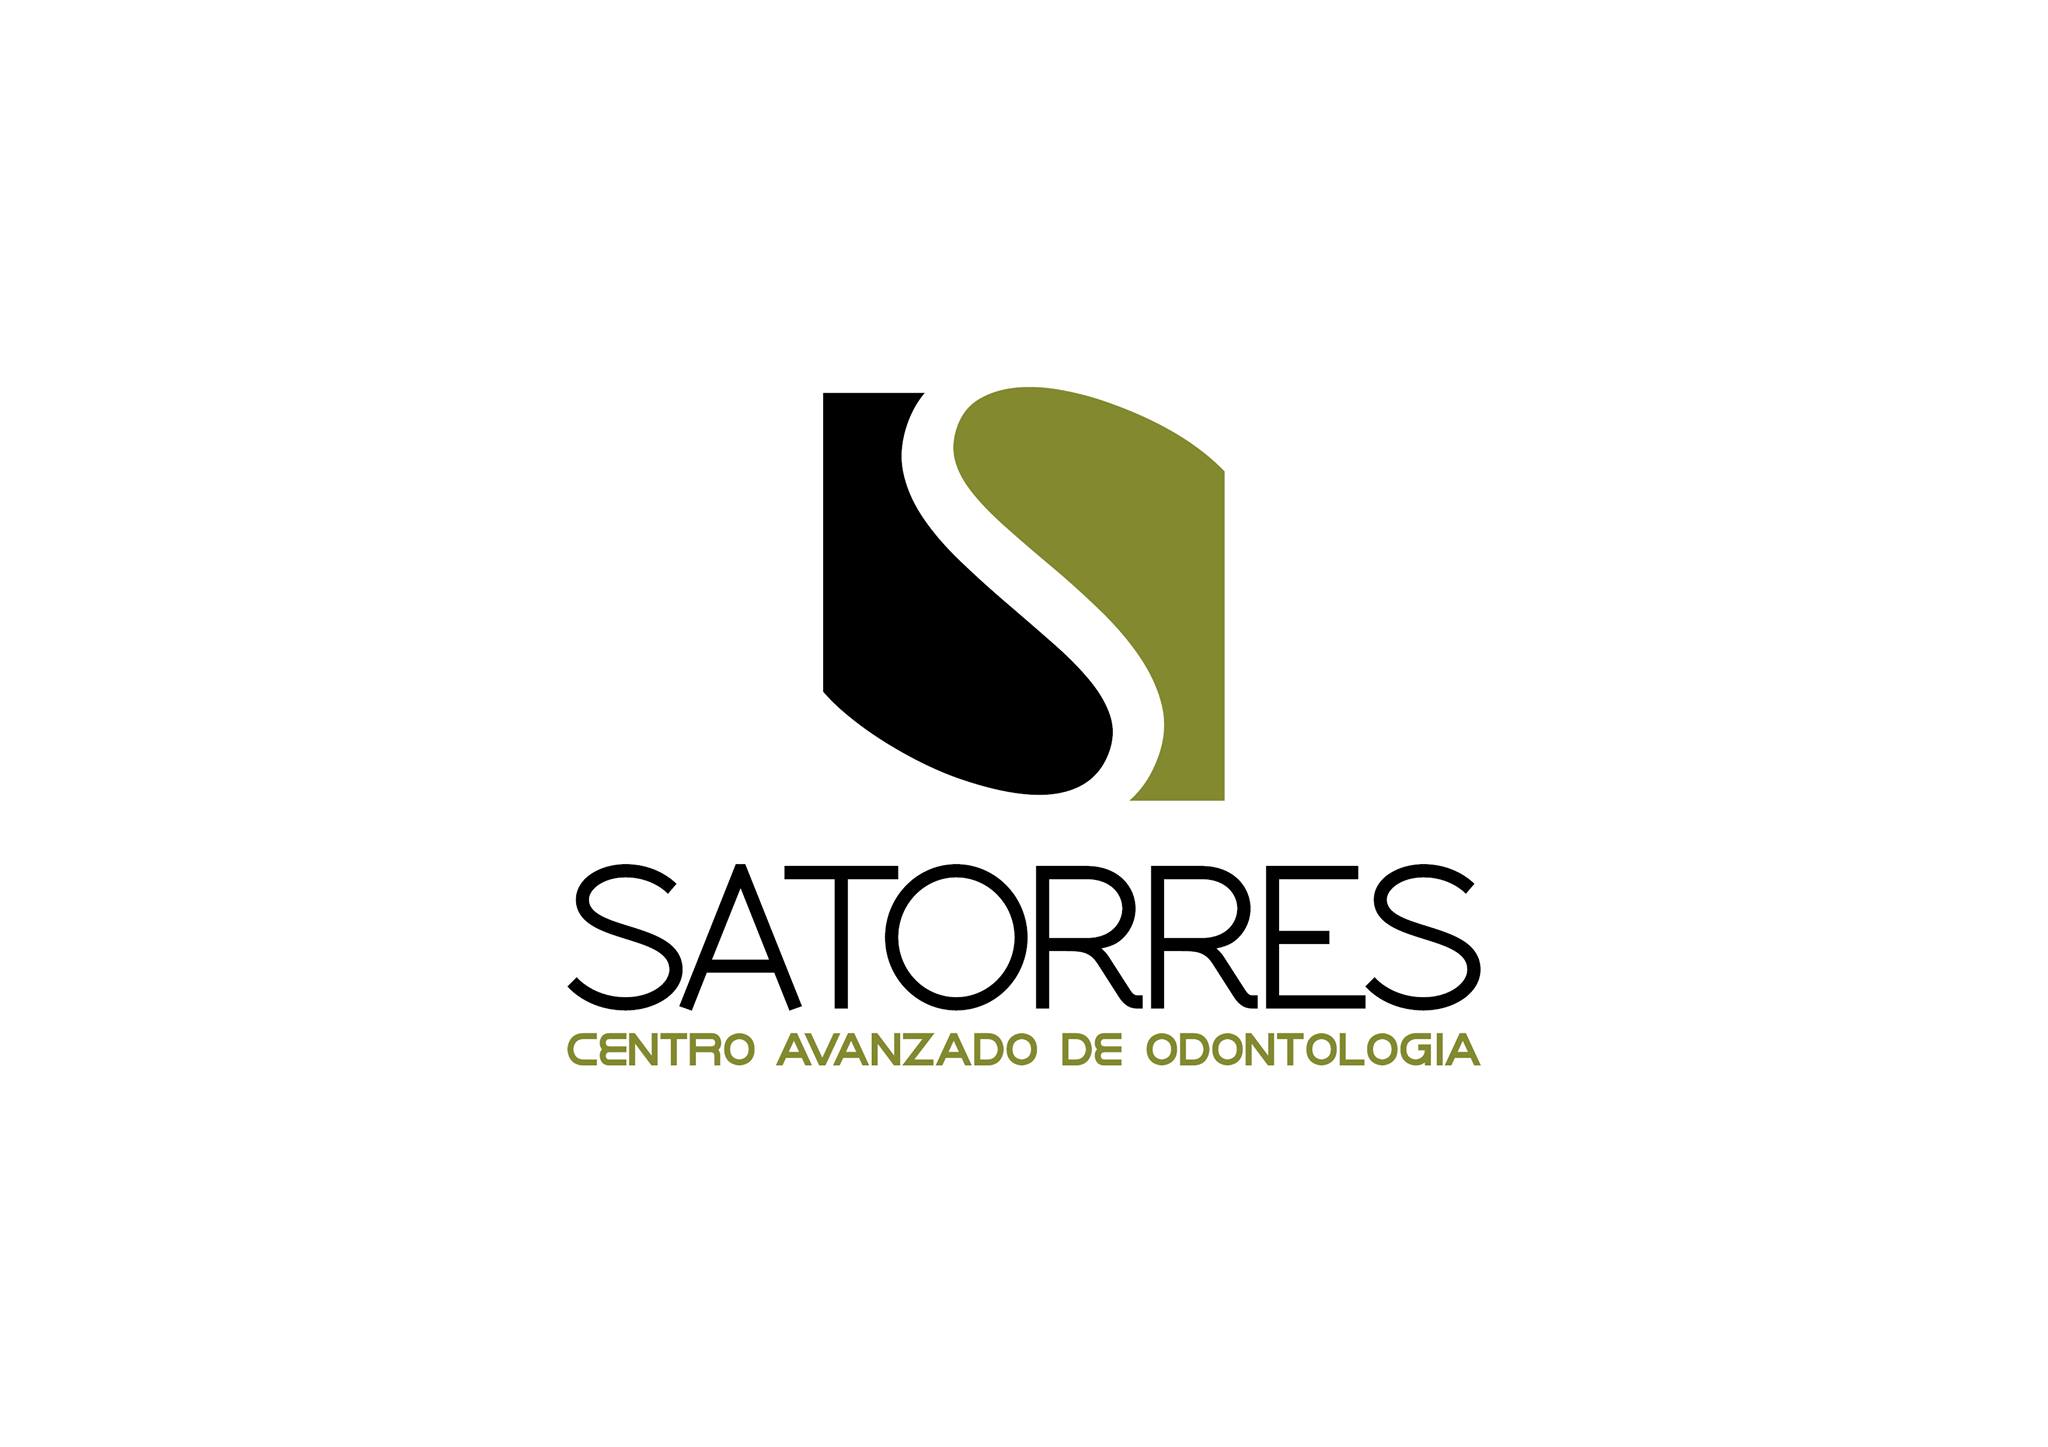 Centro avanzado de odontología Satorres